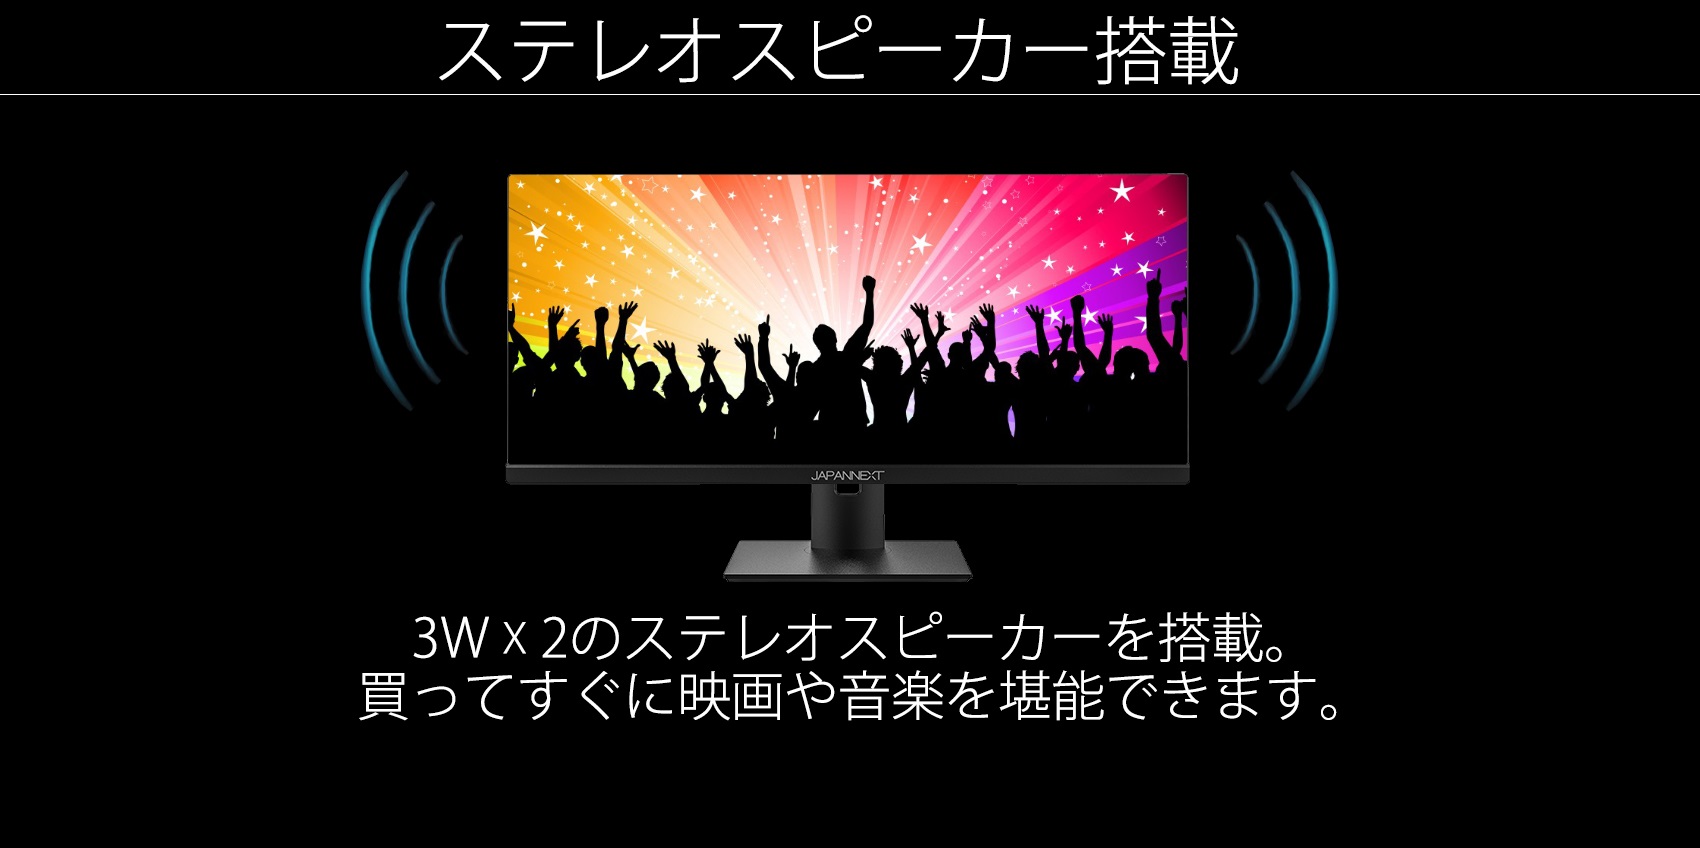 生産終了〉JAPANNEXT JN-IPS29WFHDR 29型ワイドFHD液晶モニター(IPSパネル,HDR,HDMI, DP,100Hz) –  JAPANNEXT 4K WQHDなど超解像度、ゲーミング、曲面など特殊液晶モニター